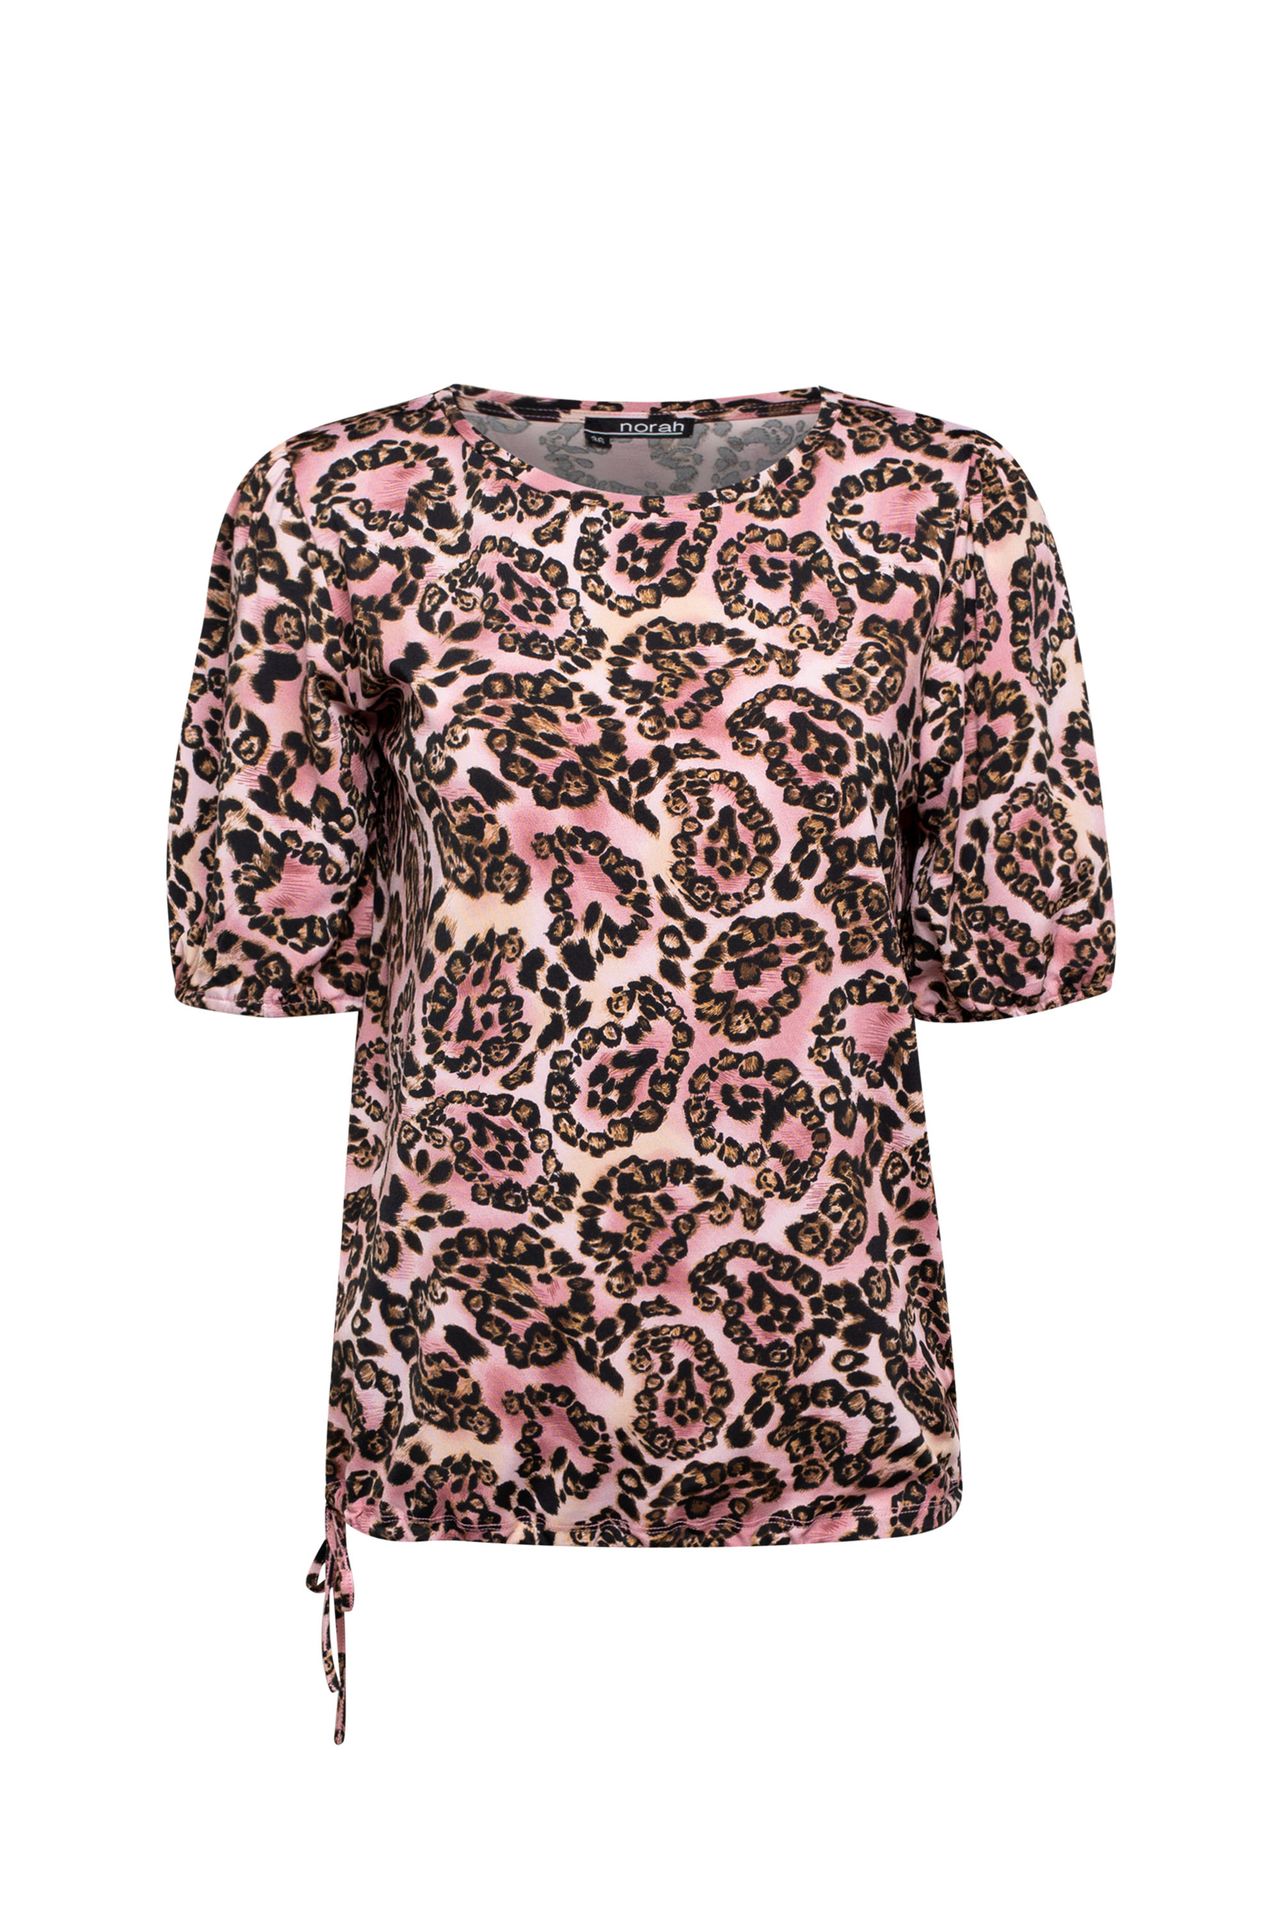 Norah Shirt roze blush multicolor 212330-909